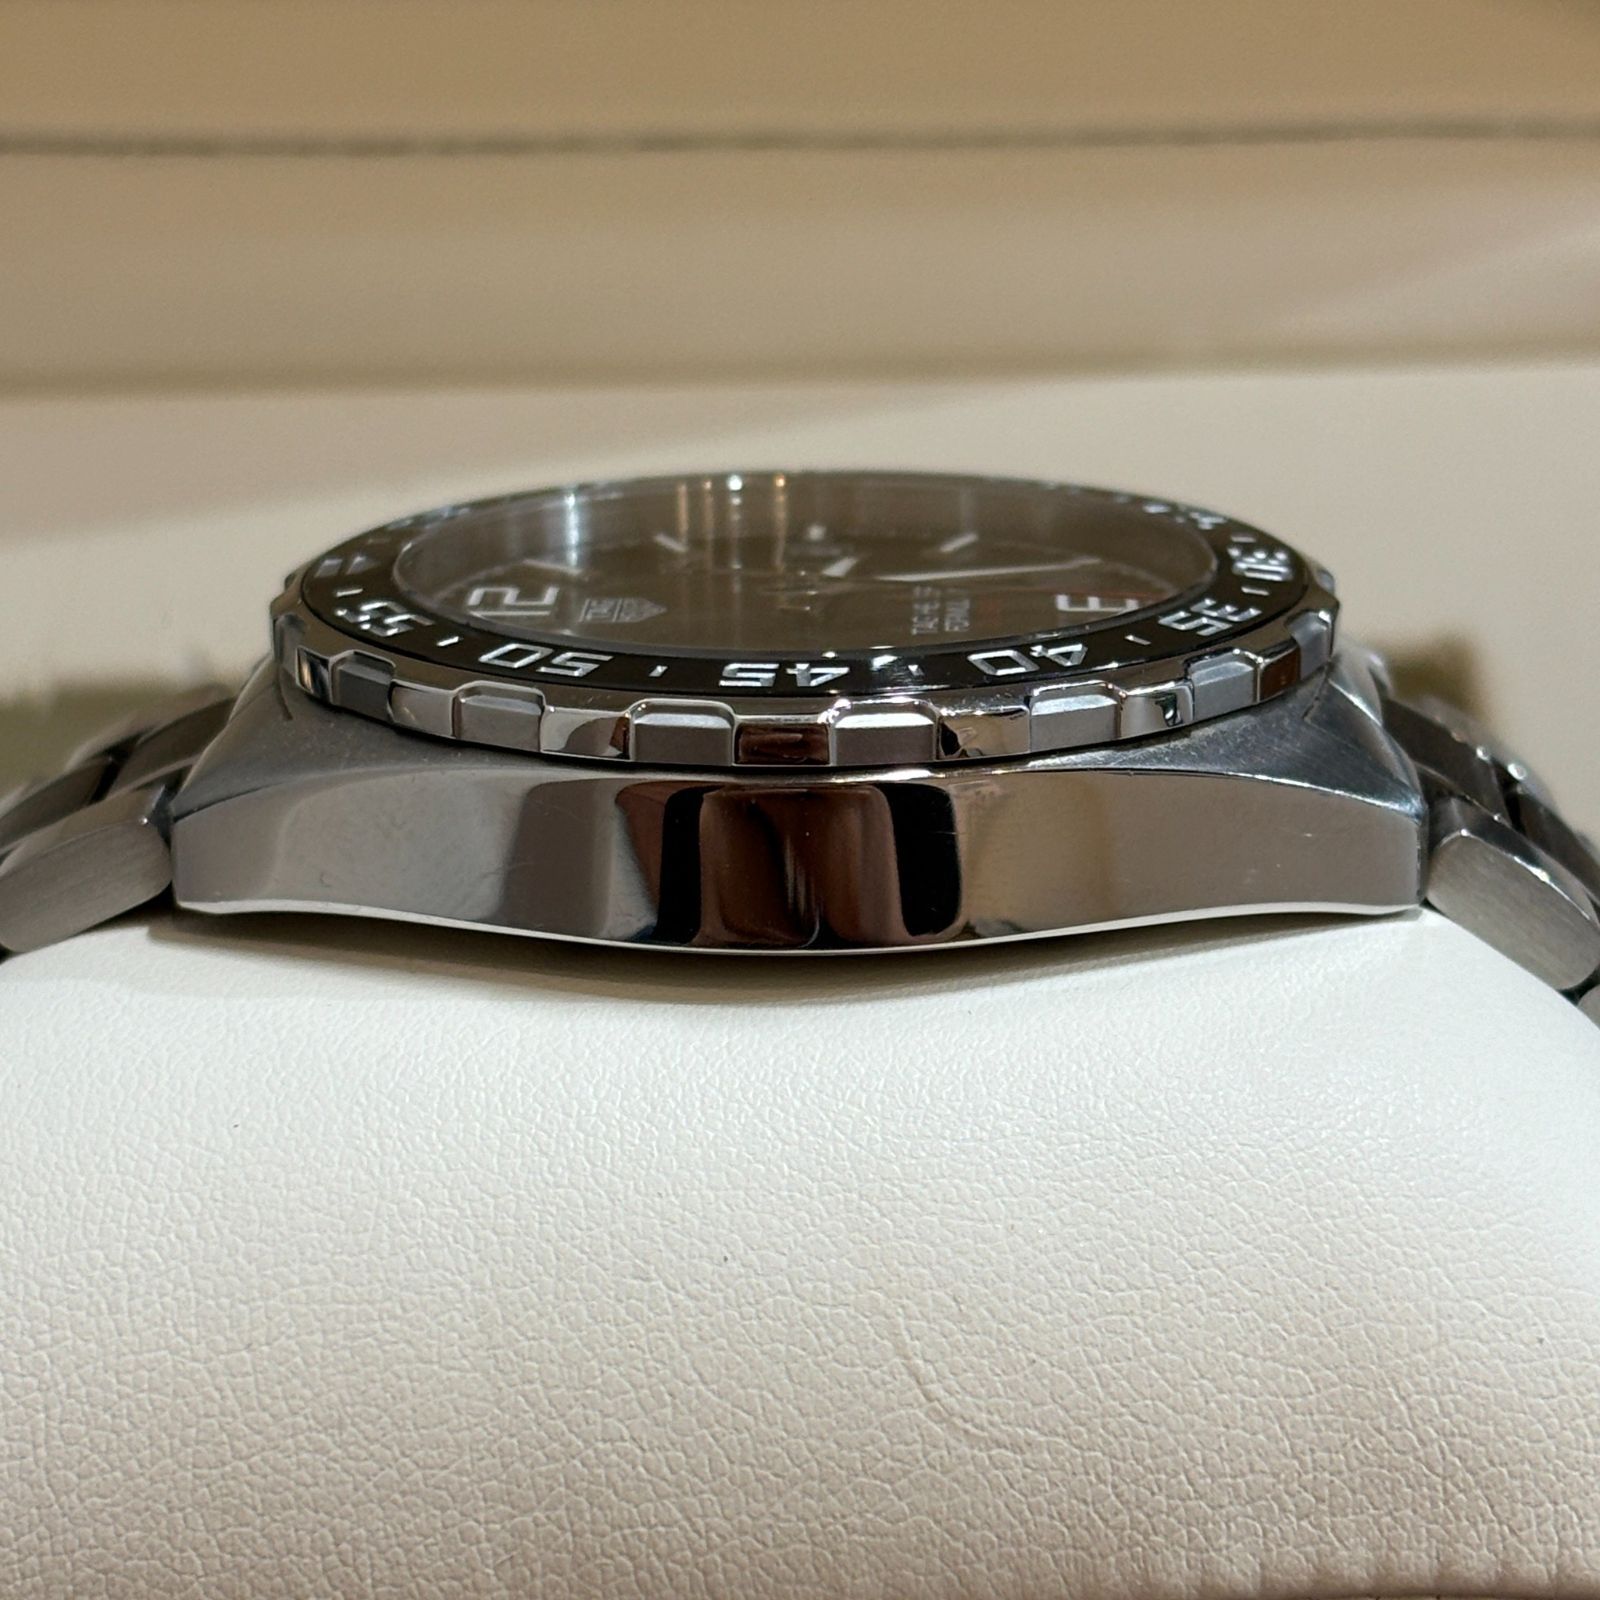 ΩNA1782 綺麗!フルセット! TAG HEUER タグホイヤー WAZ2011 フォーミュラ1 キャリバー5 デイト 43mm 自動巻き メンズ 腕時計